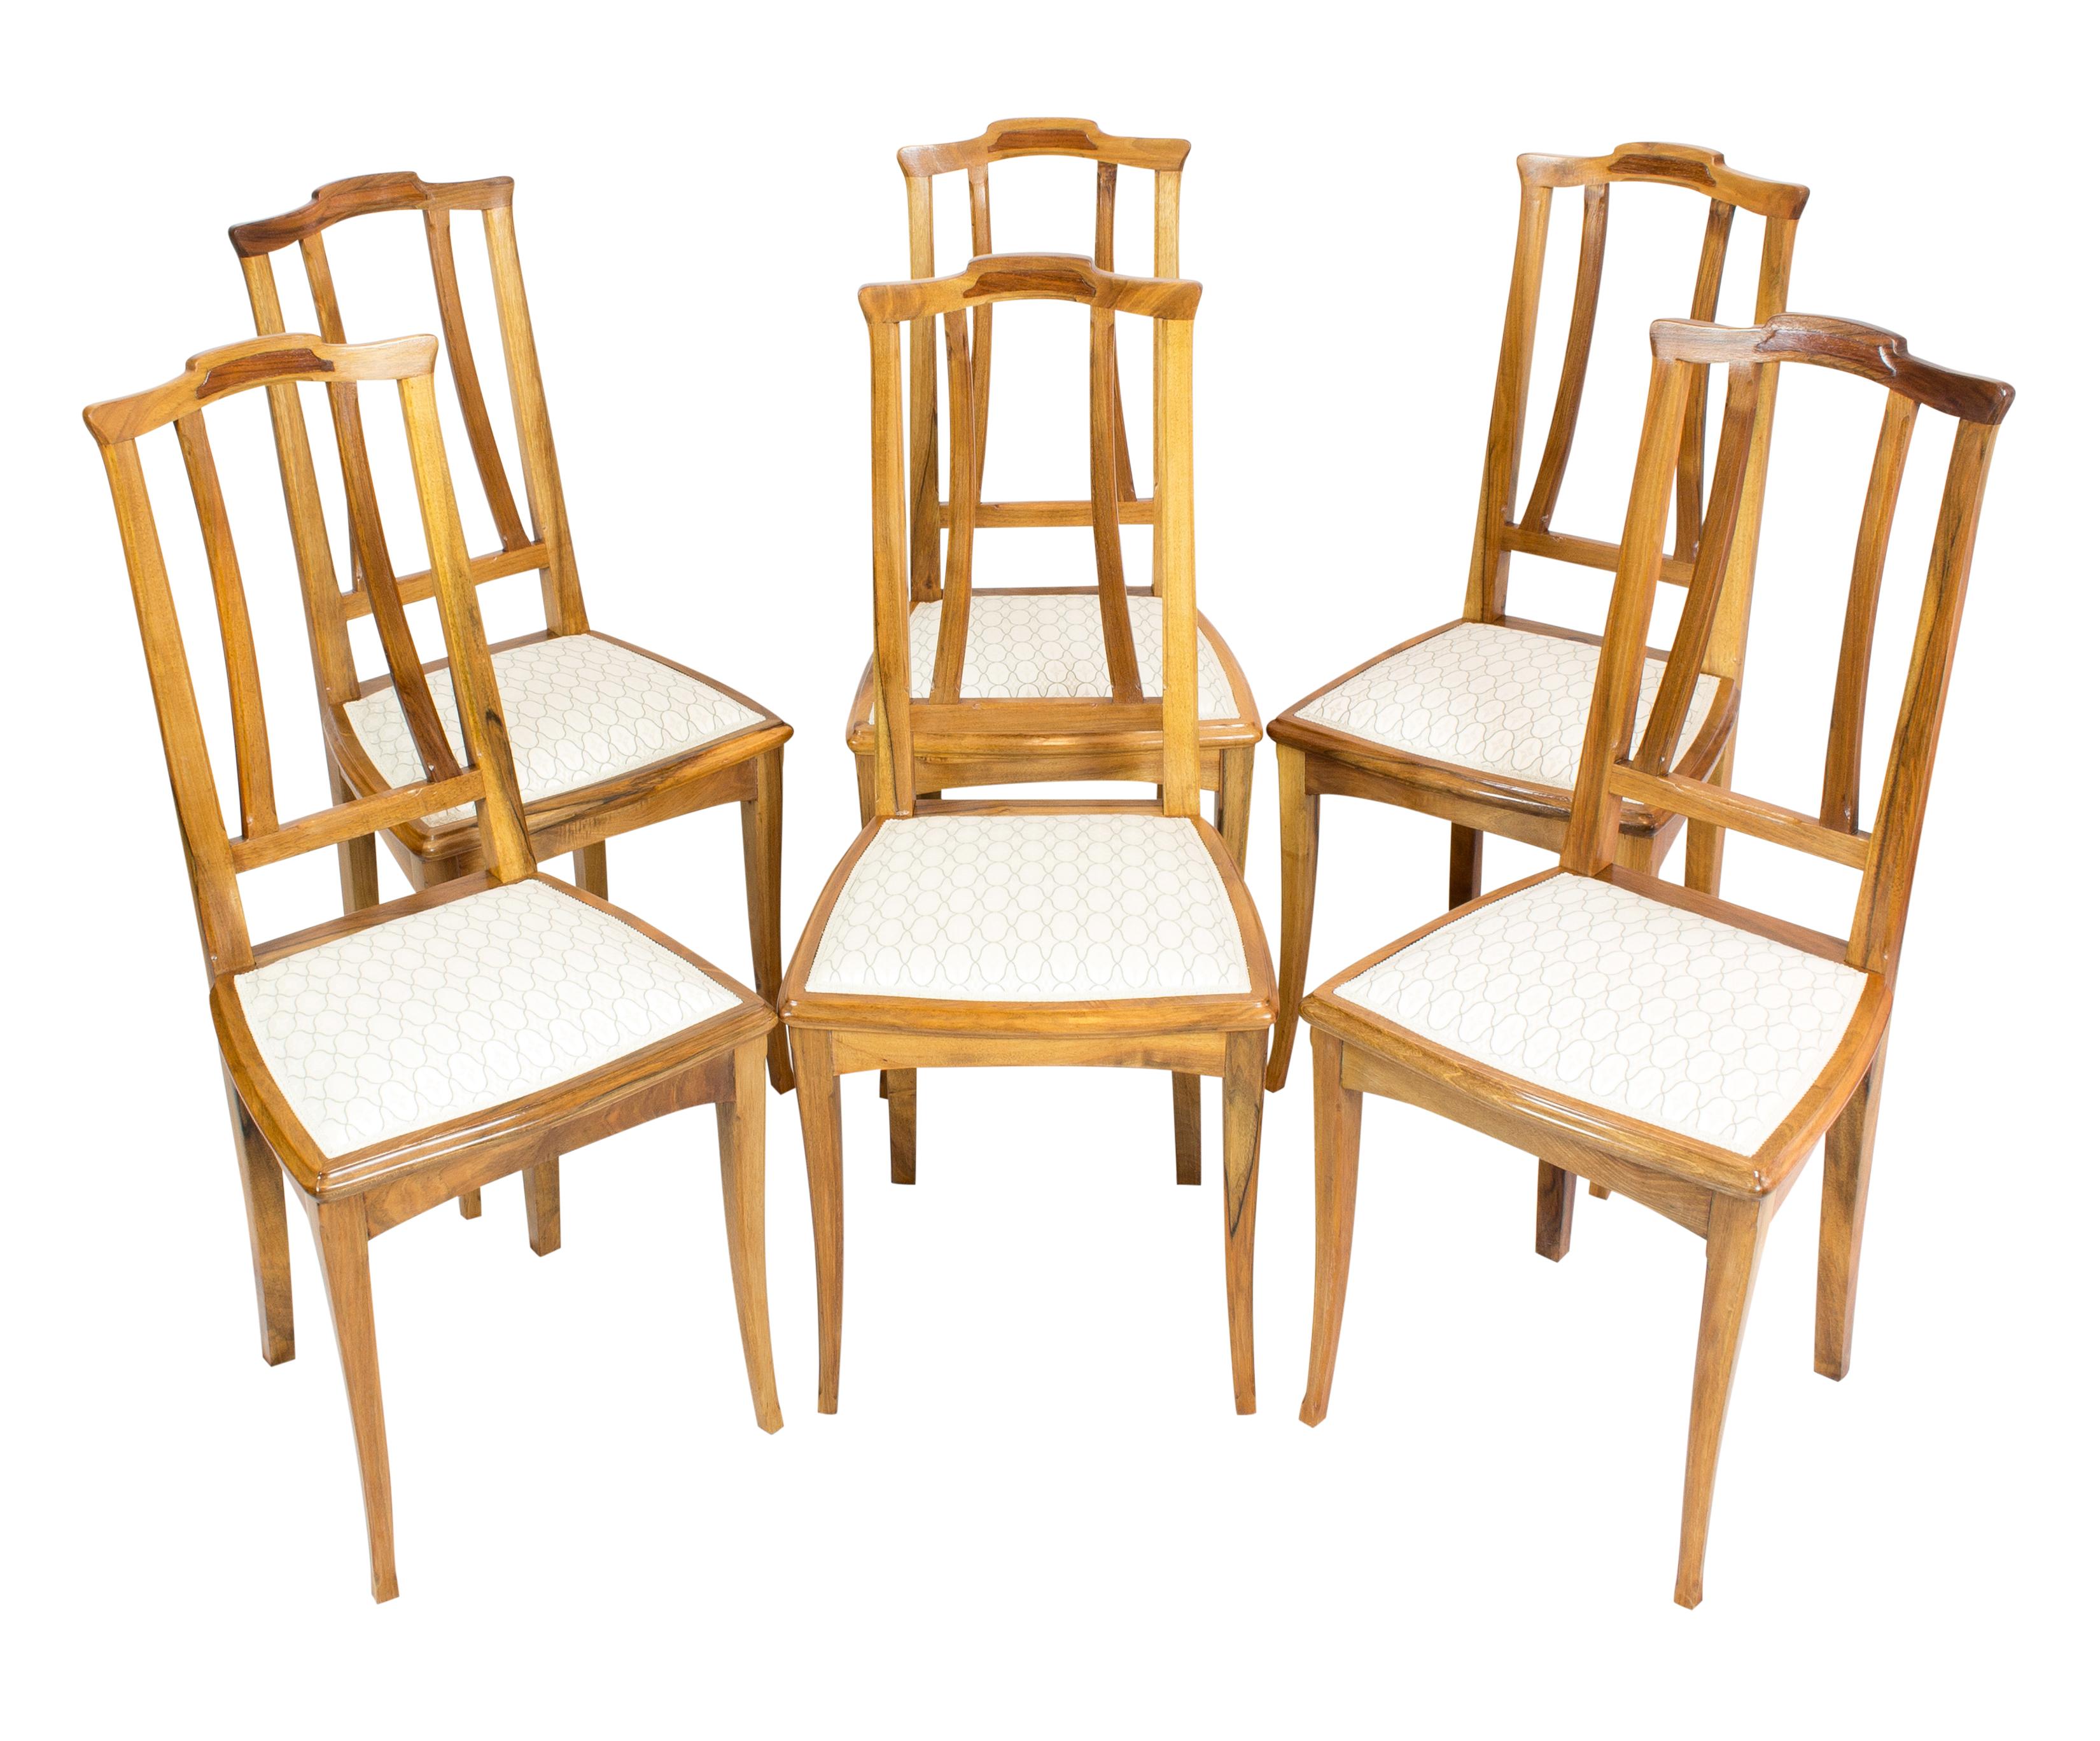 Satz von sechs Stühlen, Jugendstil um 1900, Nussbaum massiv. Die Stühle wurden neu gepolstert und mit neuem Stoff bezogen.
In sehr gutem restauriertem Zustand.
Sitzhöhe: 46 cm.